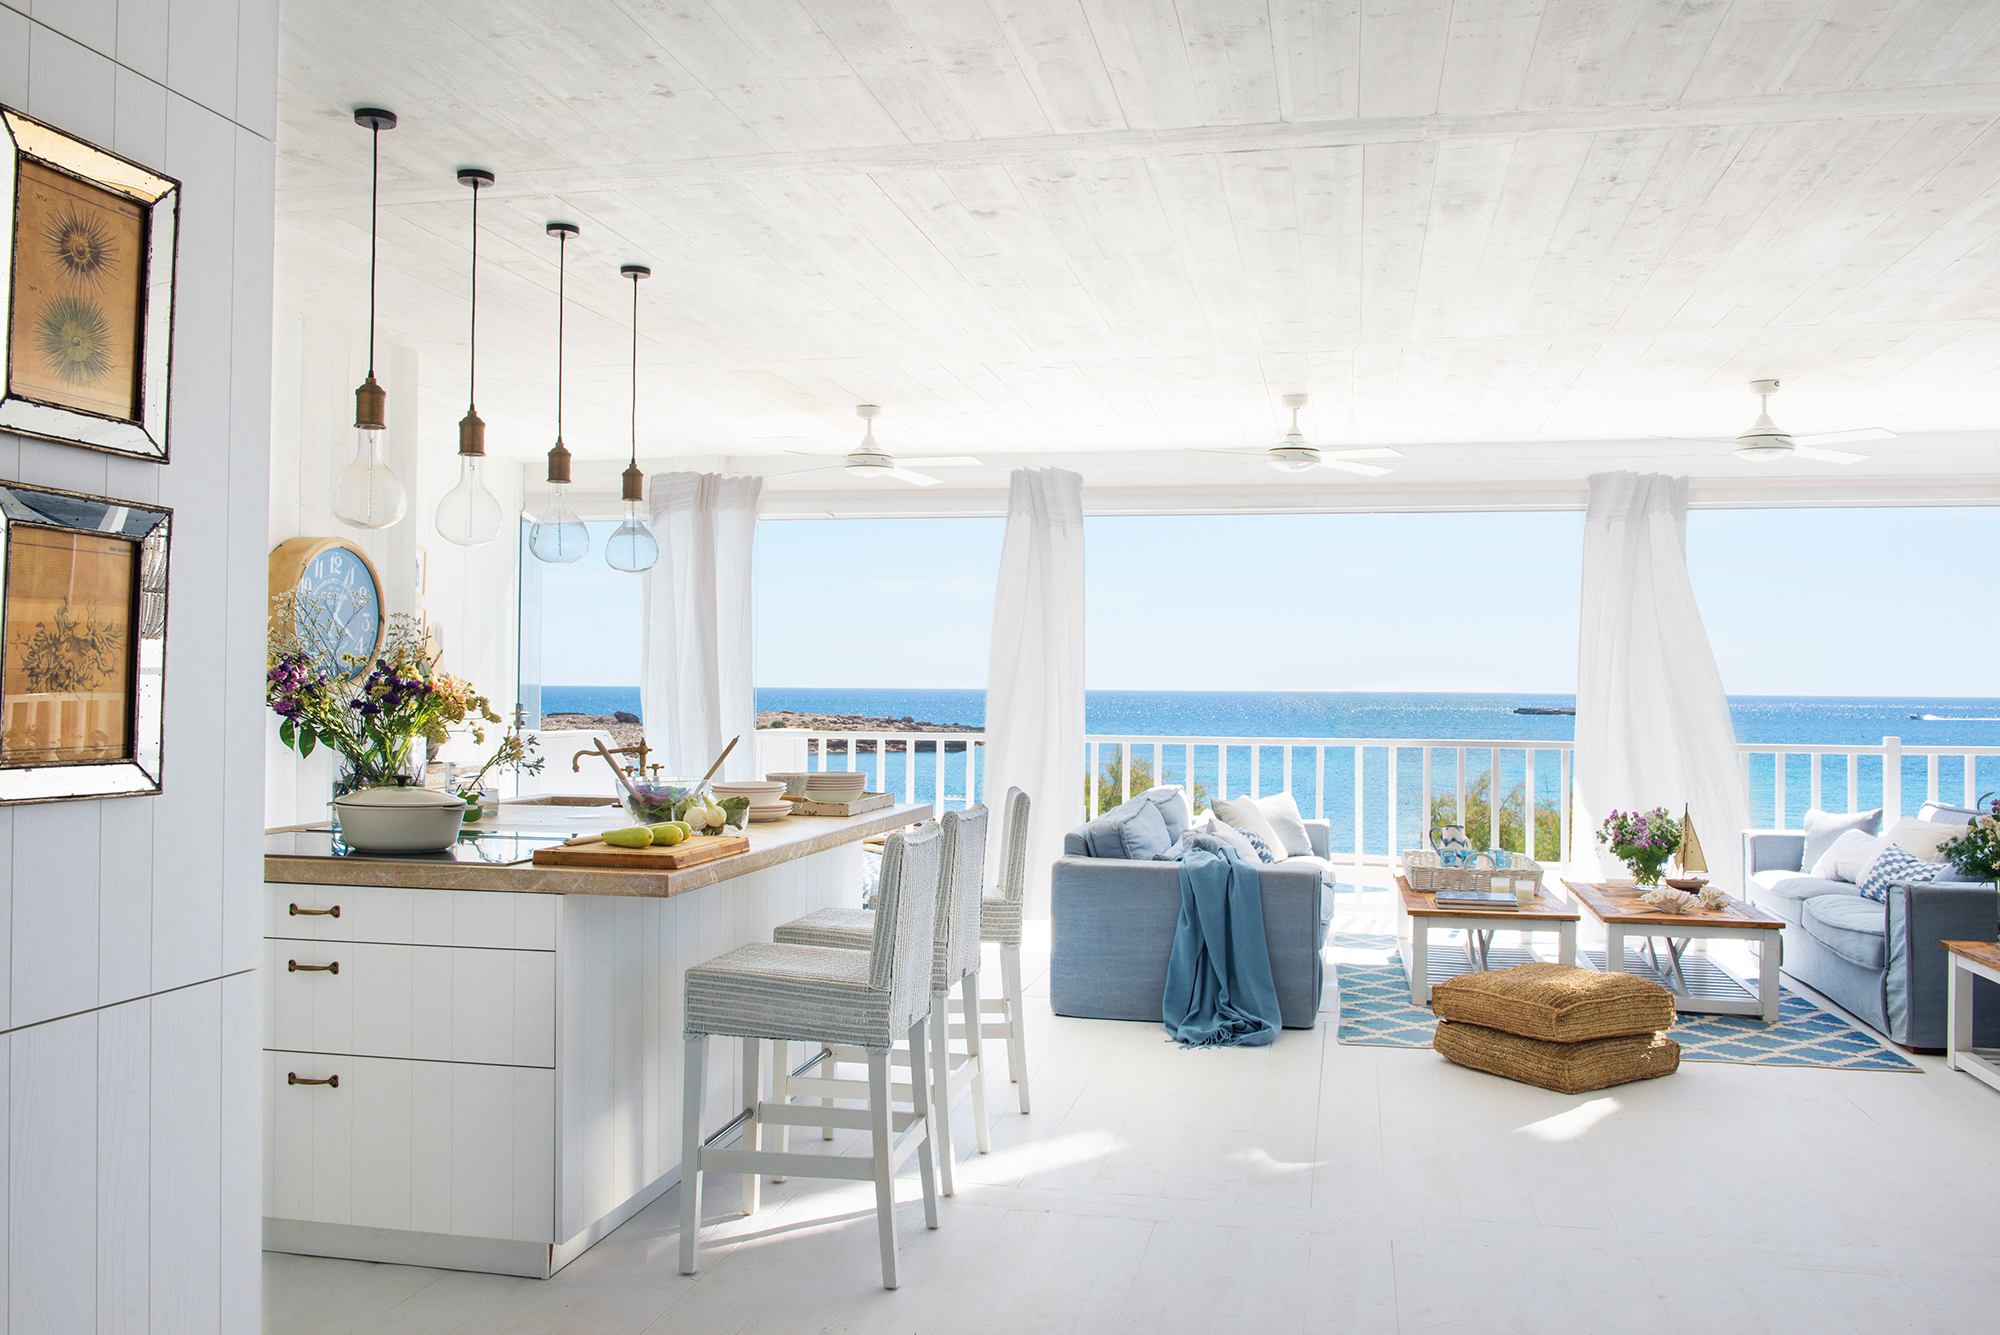 Casa de playa blanca con toques de azul